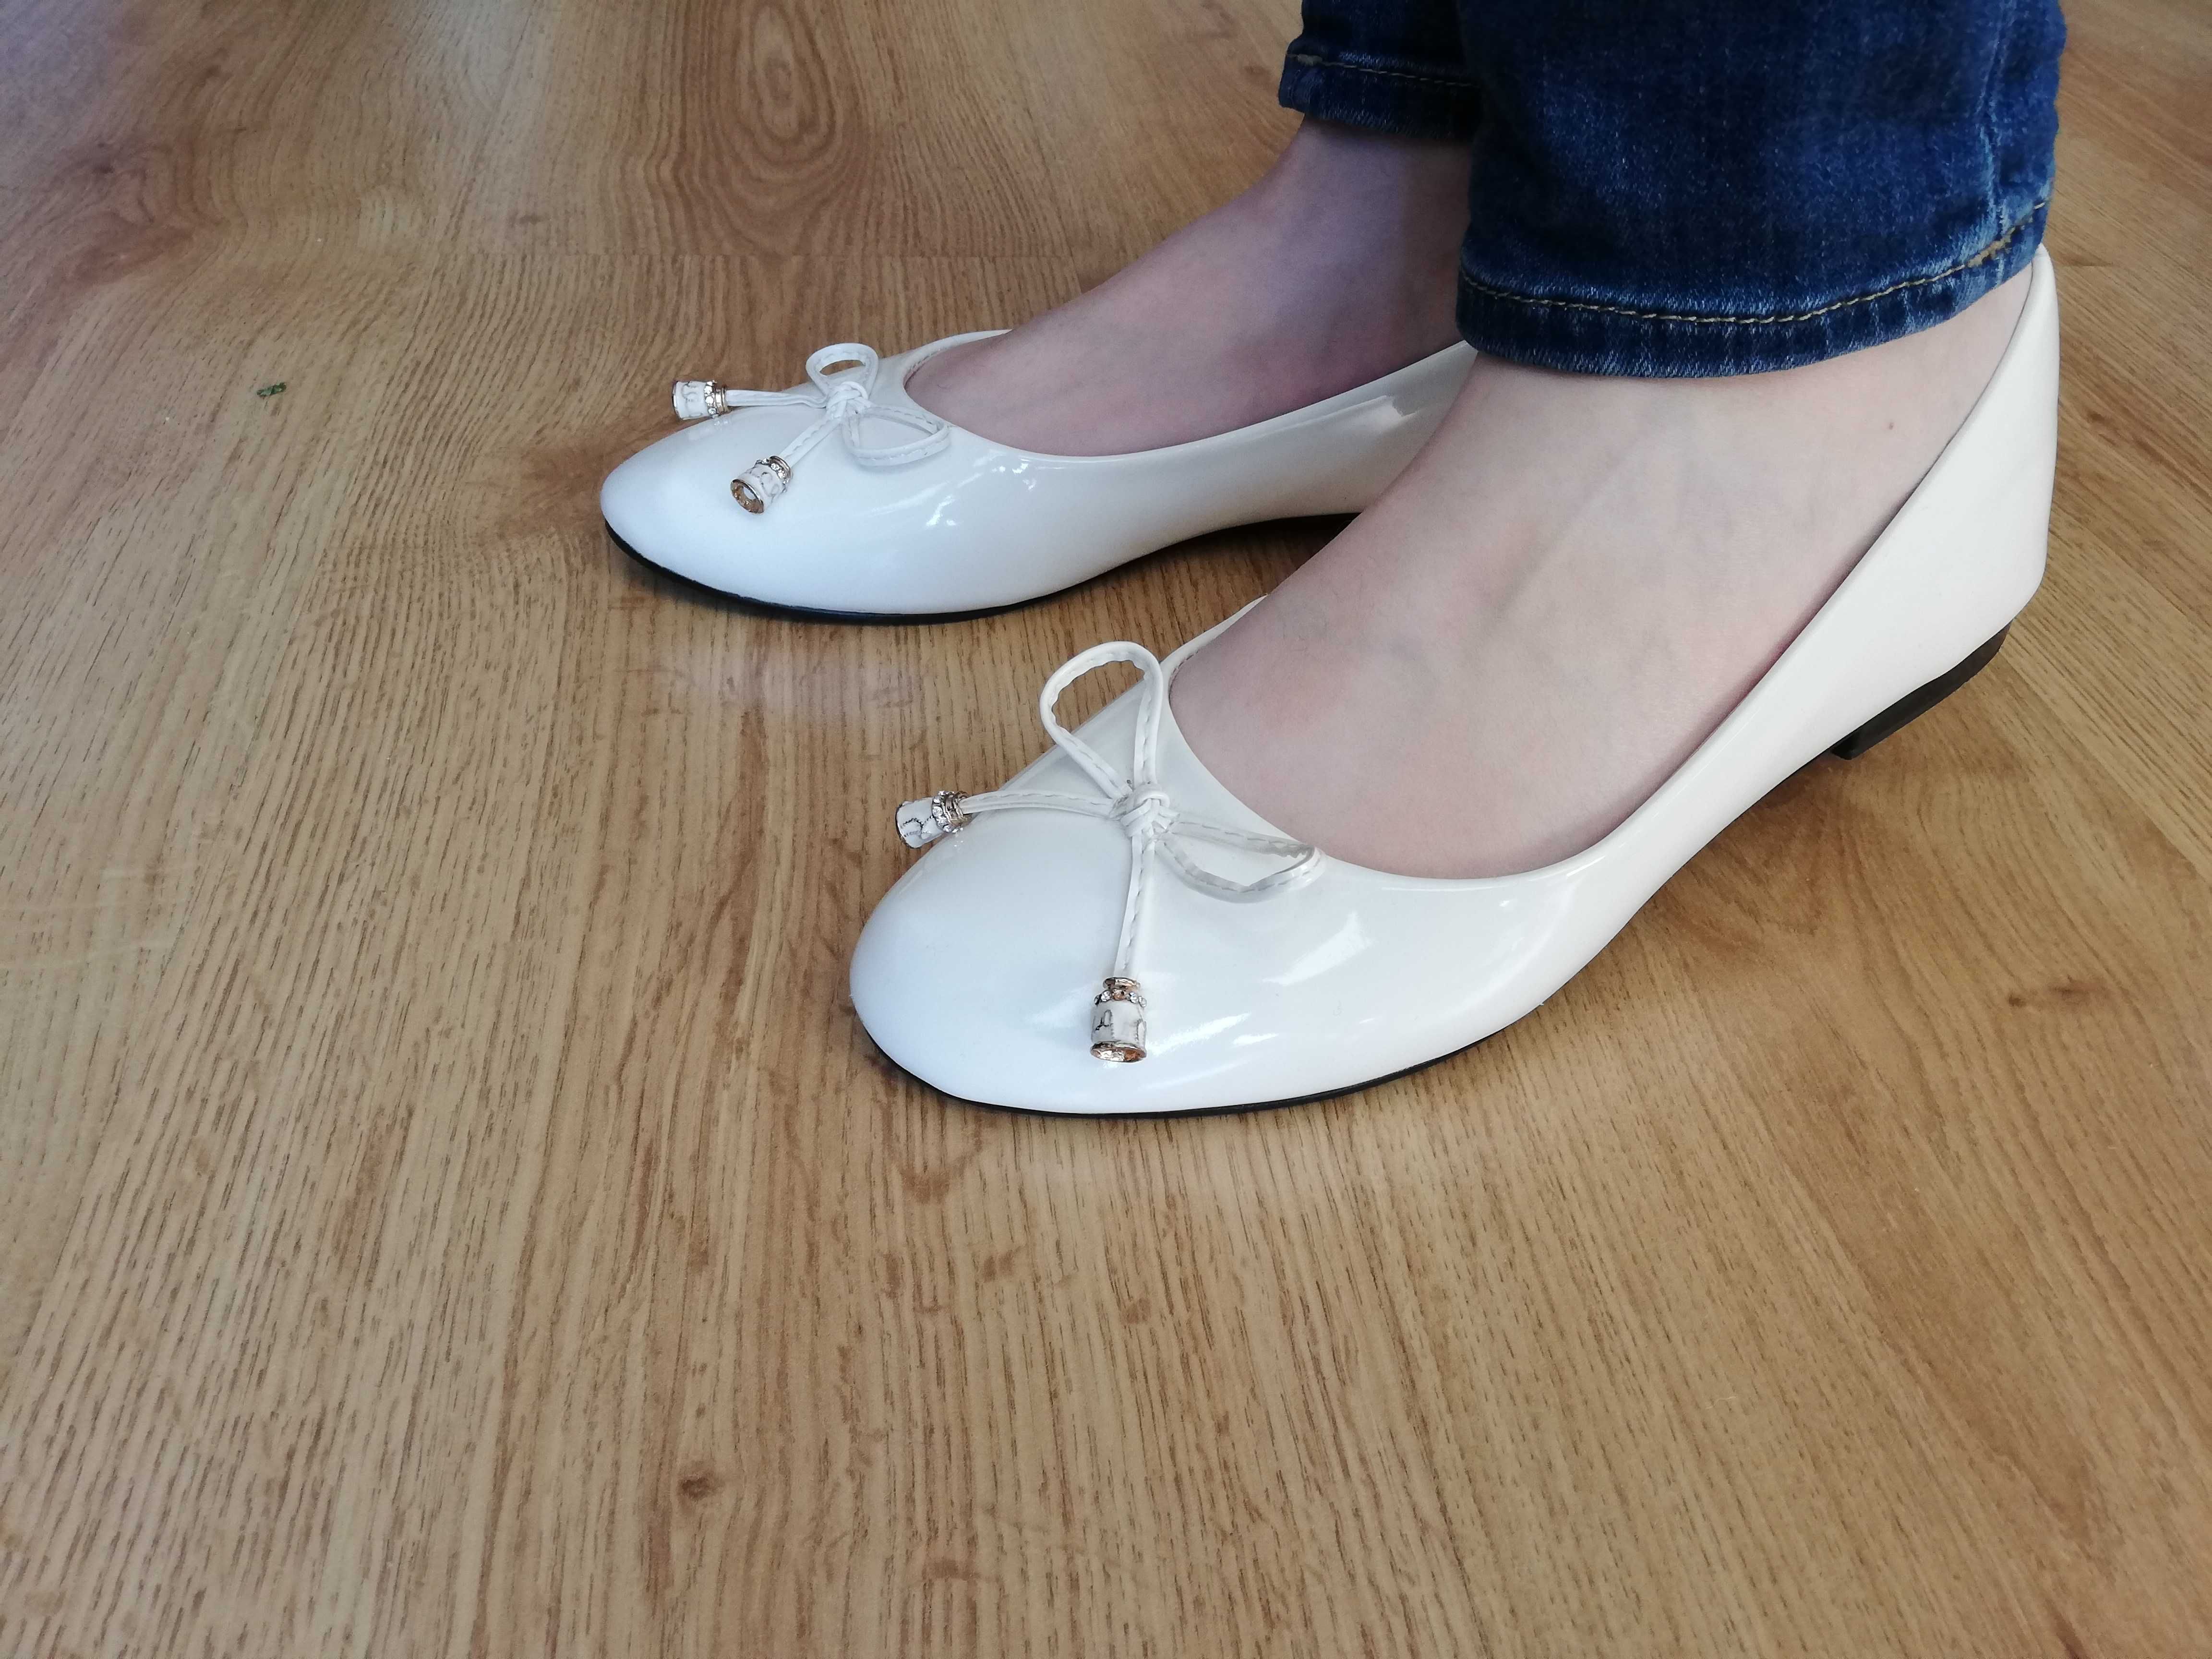 Buty białe baleriny eleganckie ślub wesele komunia